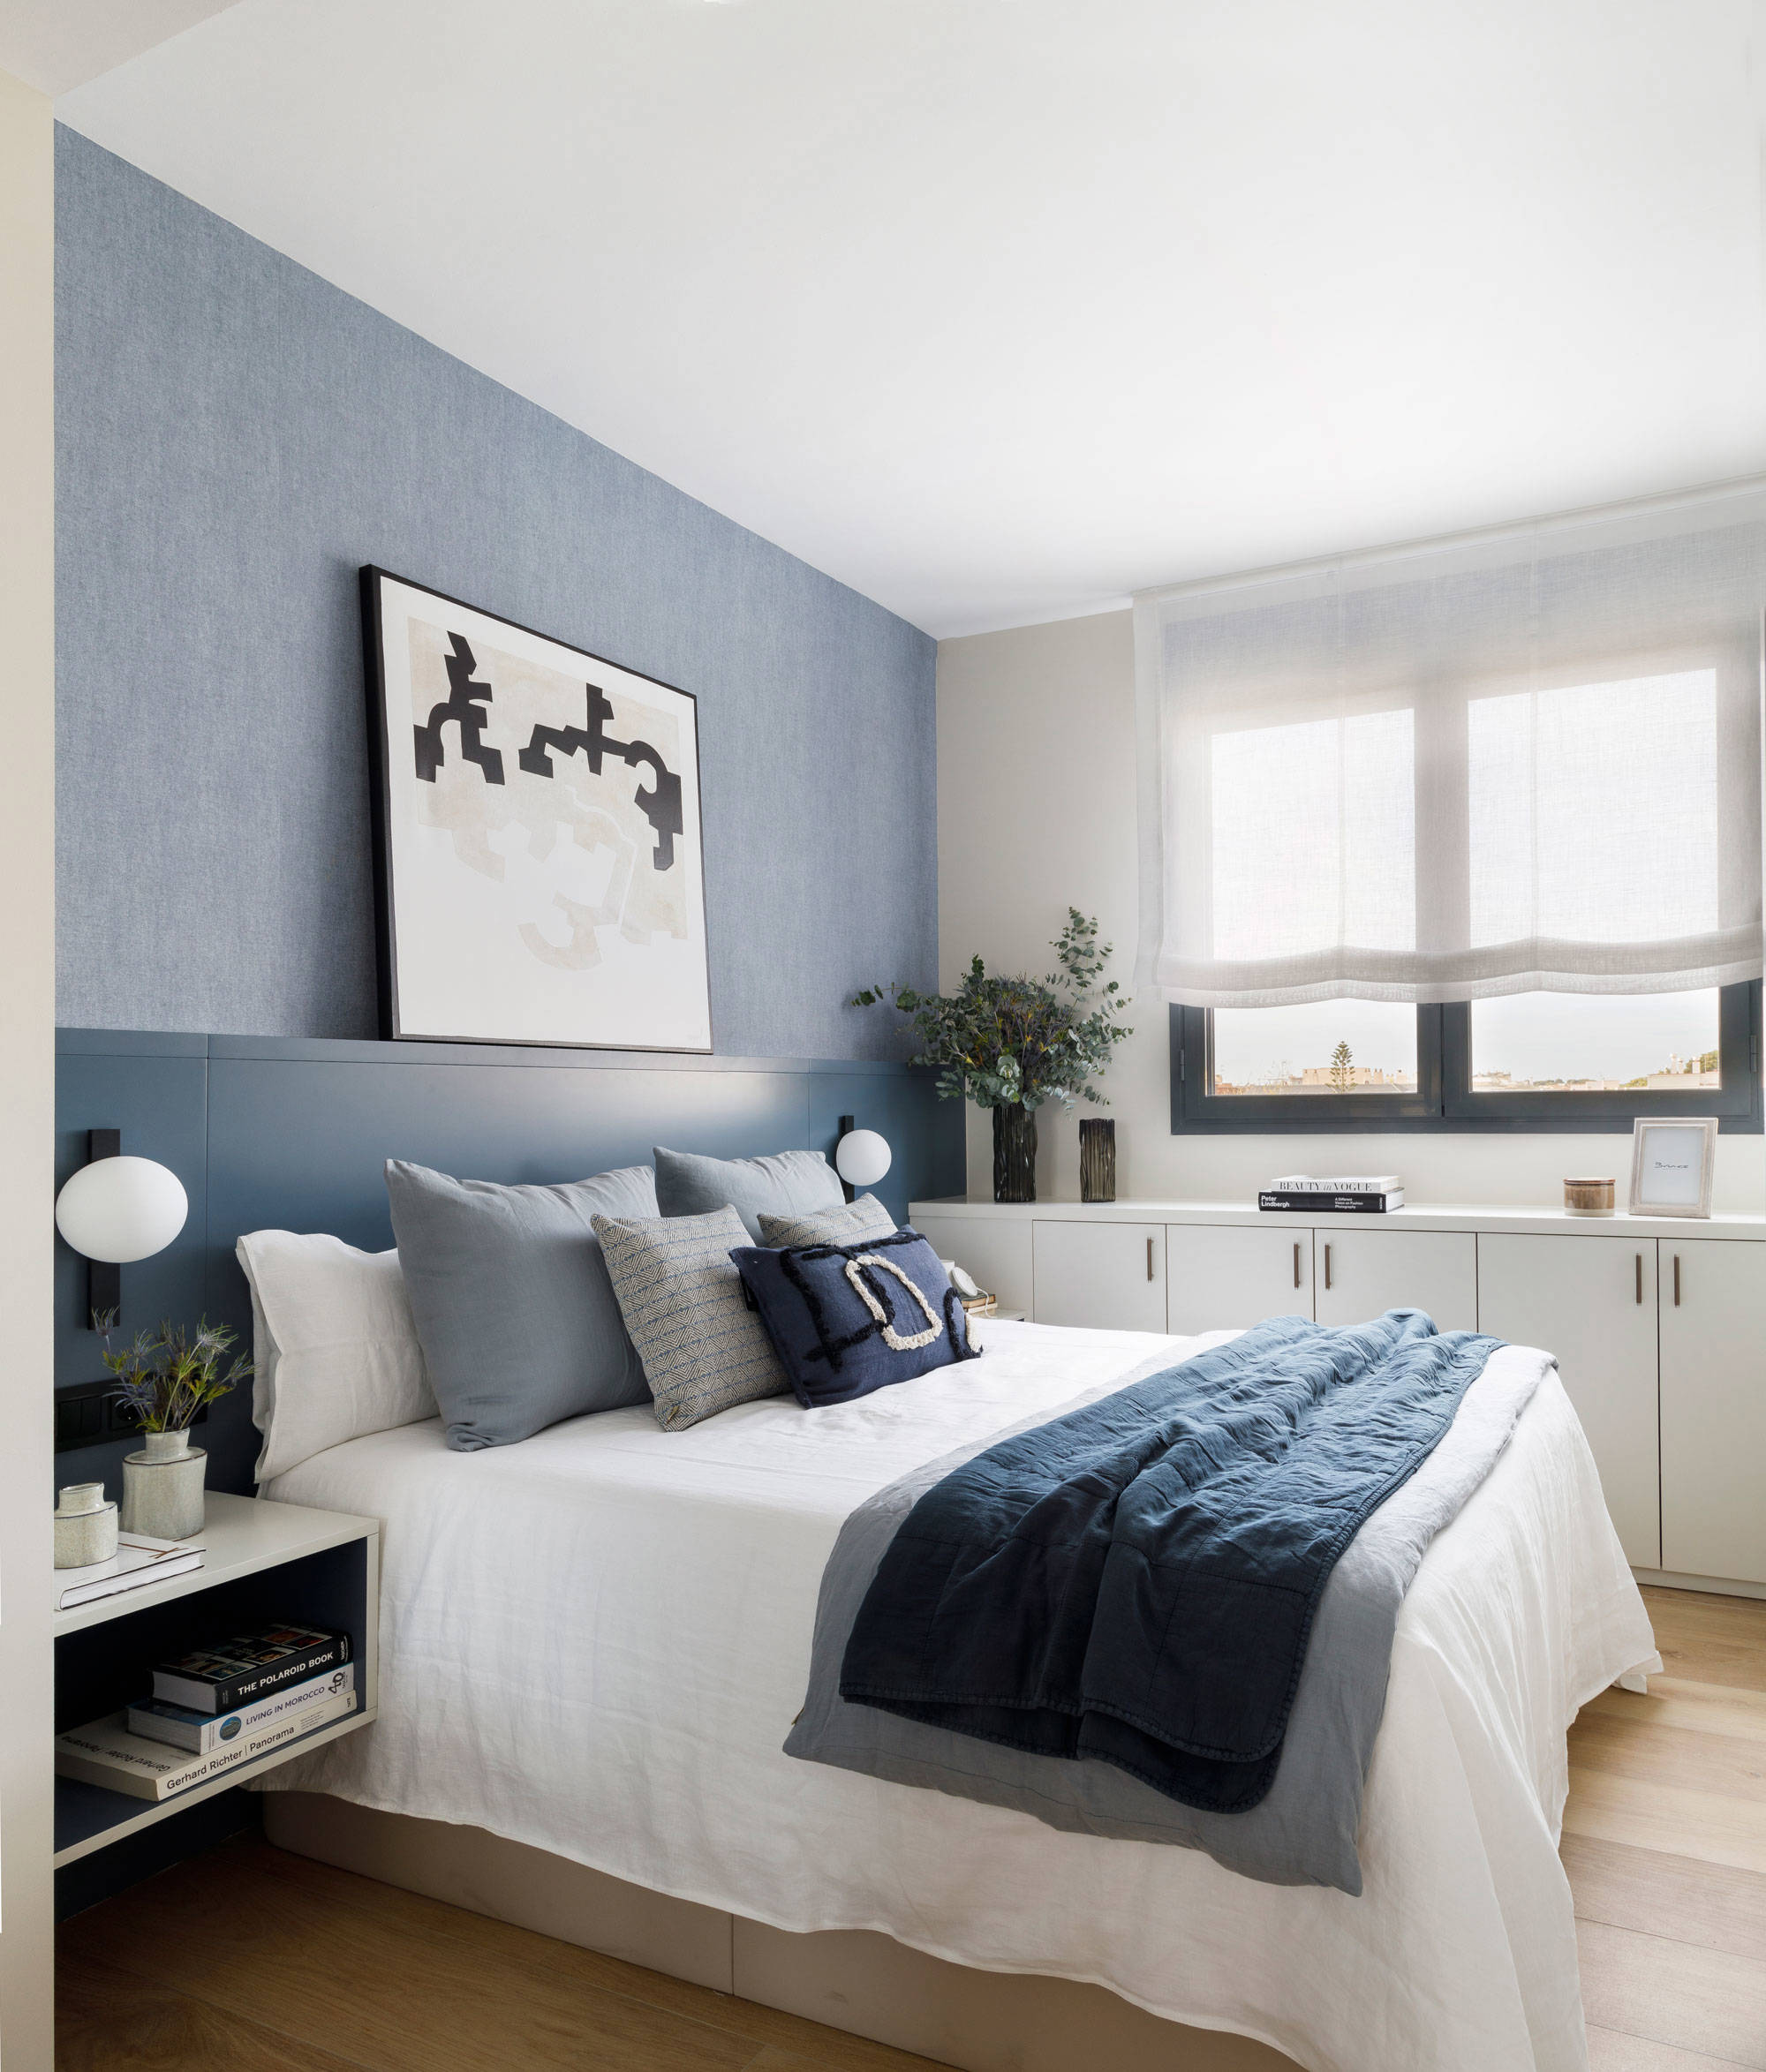 Dormitorio en blanco y azul con mobiliario a medida diseñado por Pia Capdevila.